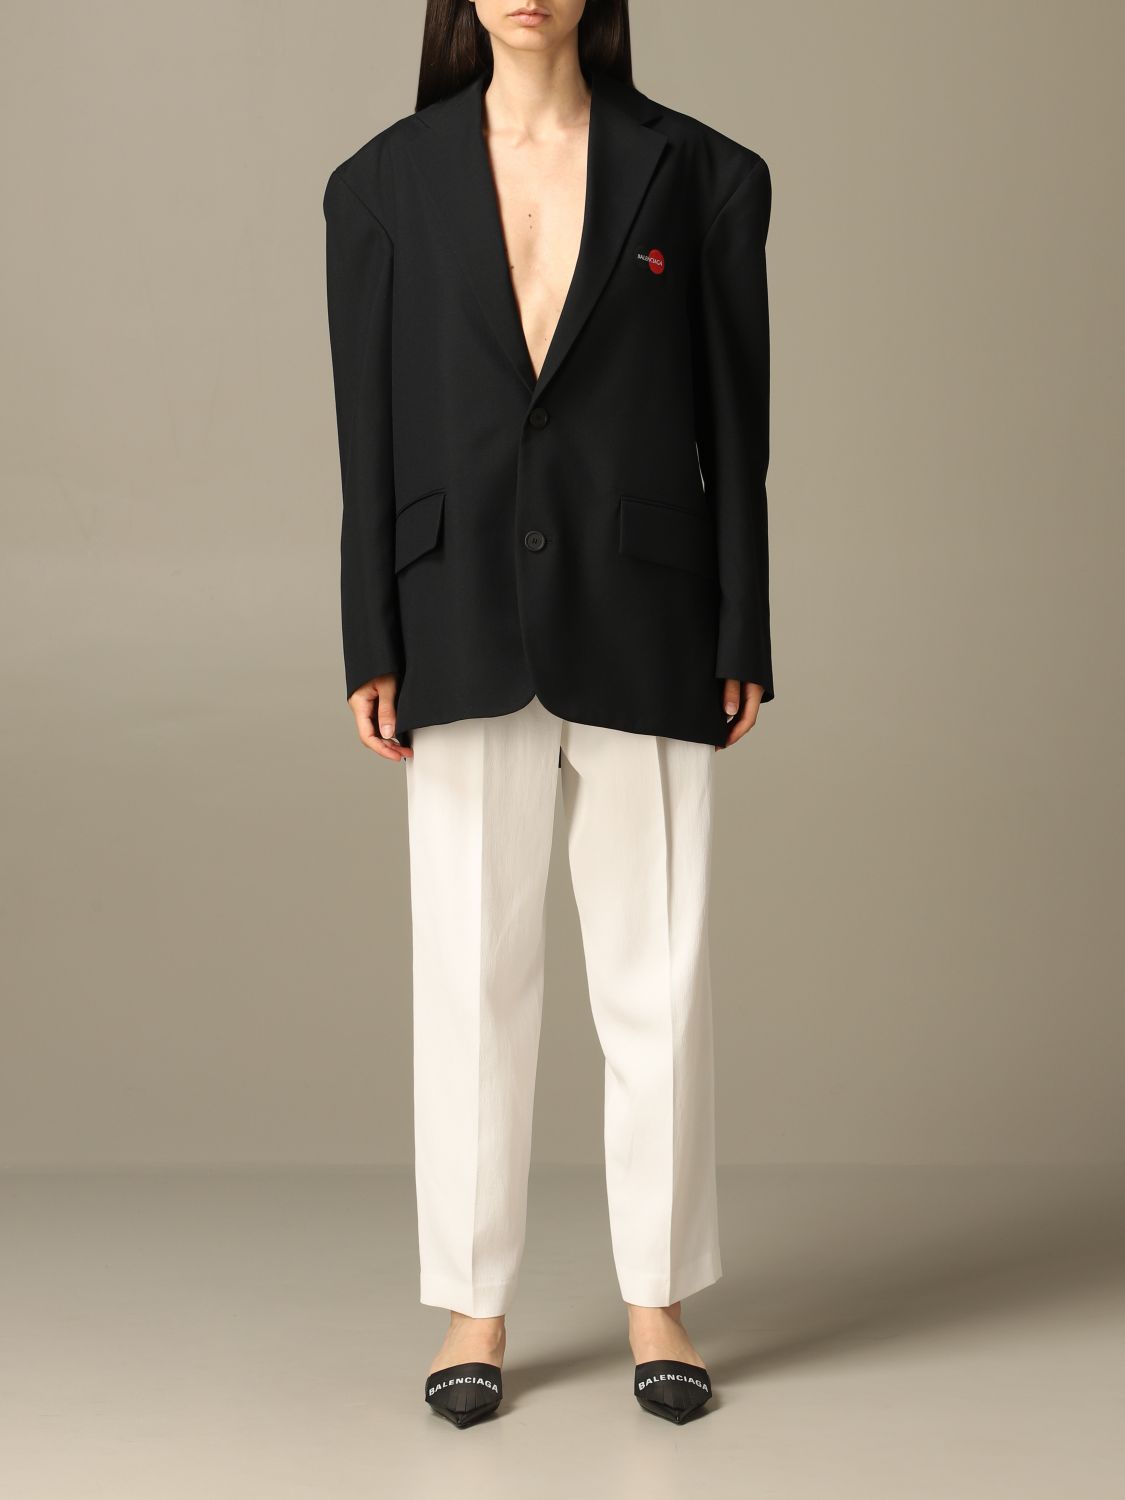 Balenciaga Outlet blazer for woman  Black  Balenciaga blazer 621998  TXI17 online on GIGLIOCOM